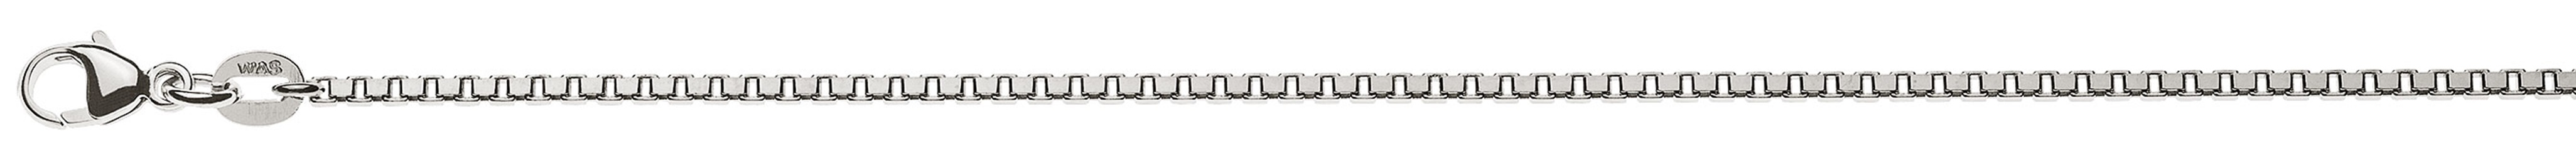 AURONOS Prestige Halskette Weissgold 18K Venezianerkette diamantiert 45cm 1.6mm